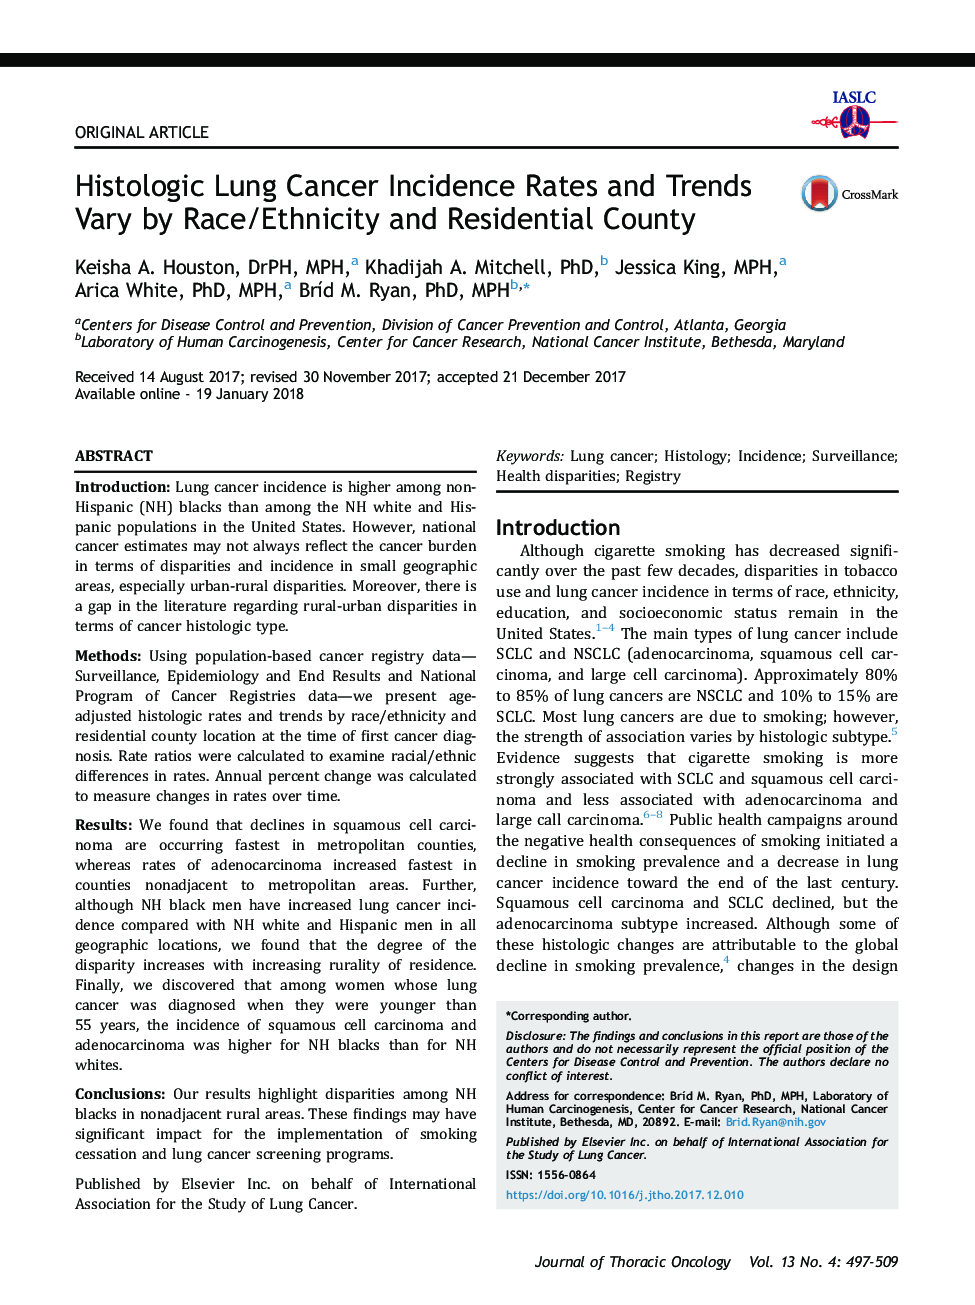 نرخ بروز سرطان های ریوی هیستوپاتولوژیک و روند آن ها به صورت نژاد / قومیت و شهر مسکونی متفاوت است 